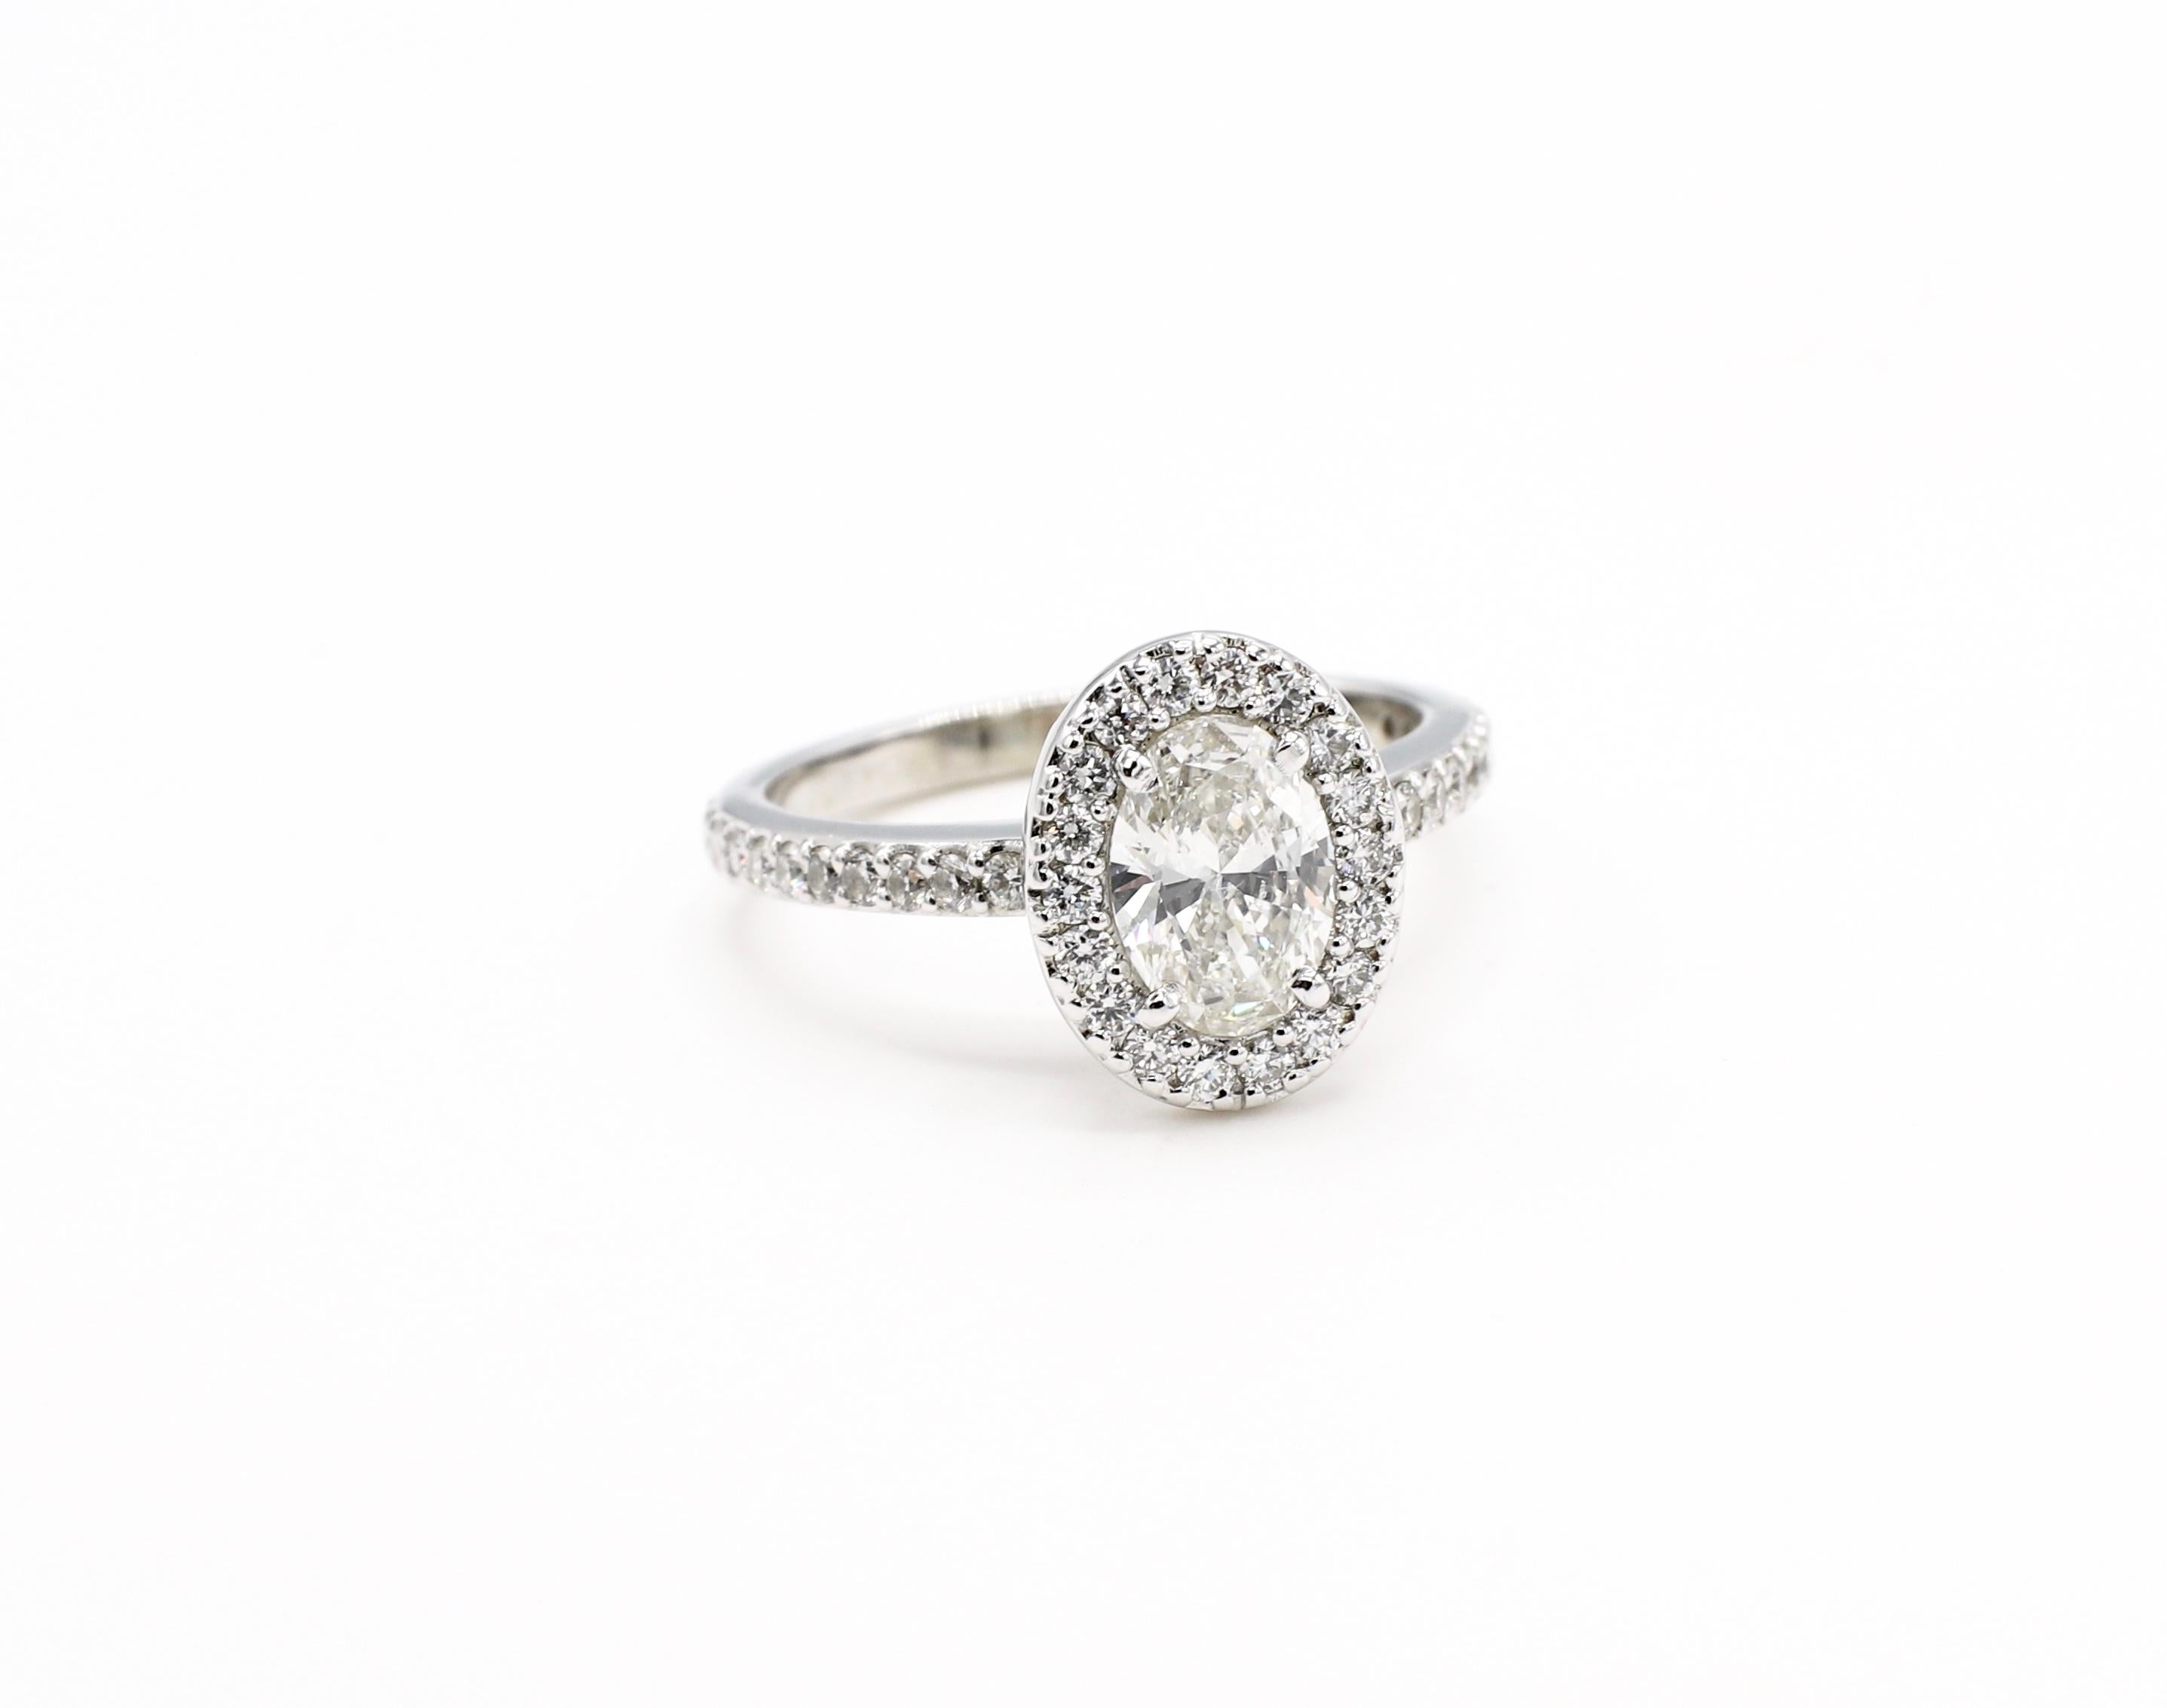 1.9 carat oval diamond ring